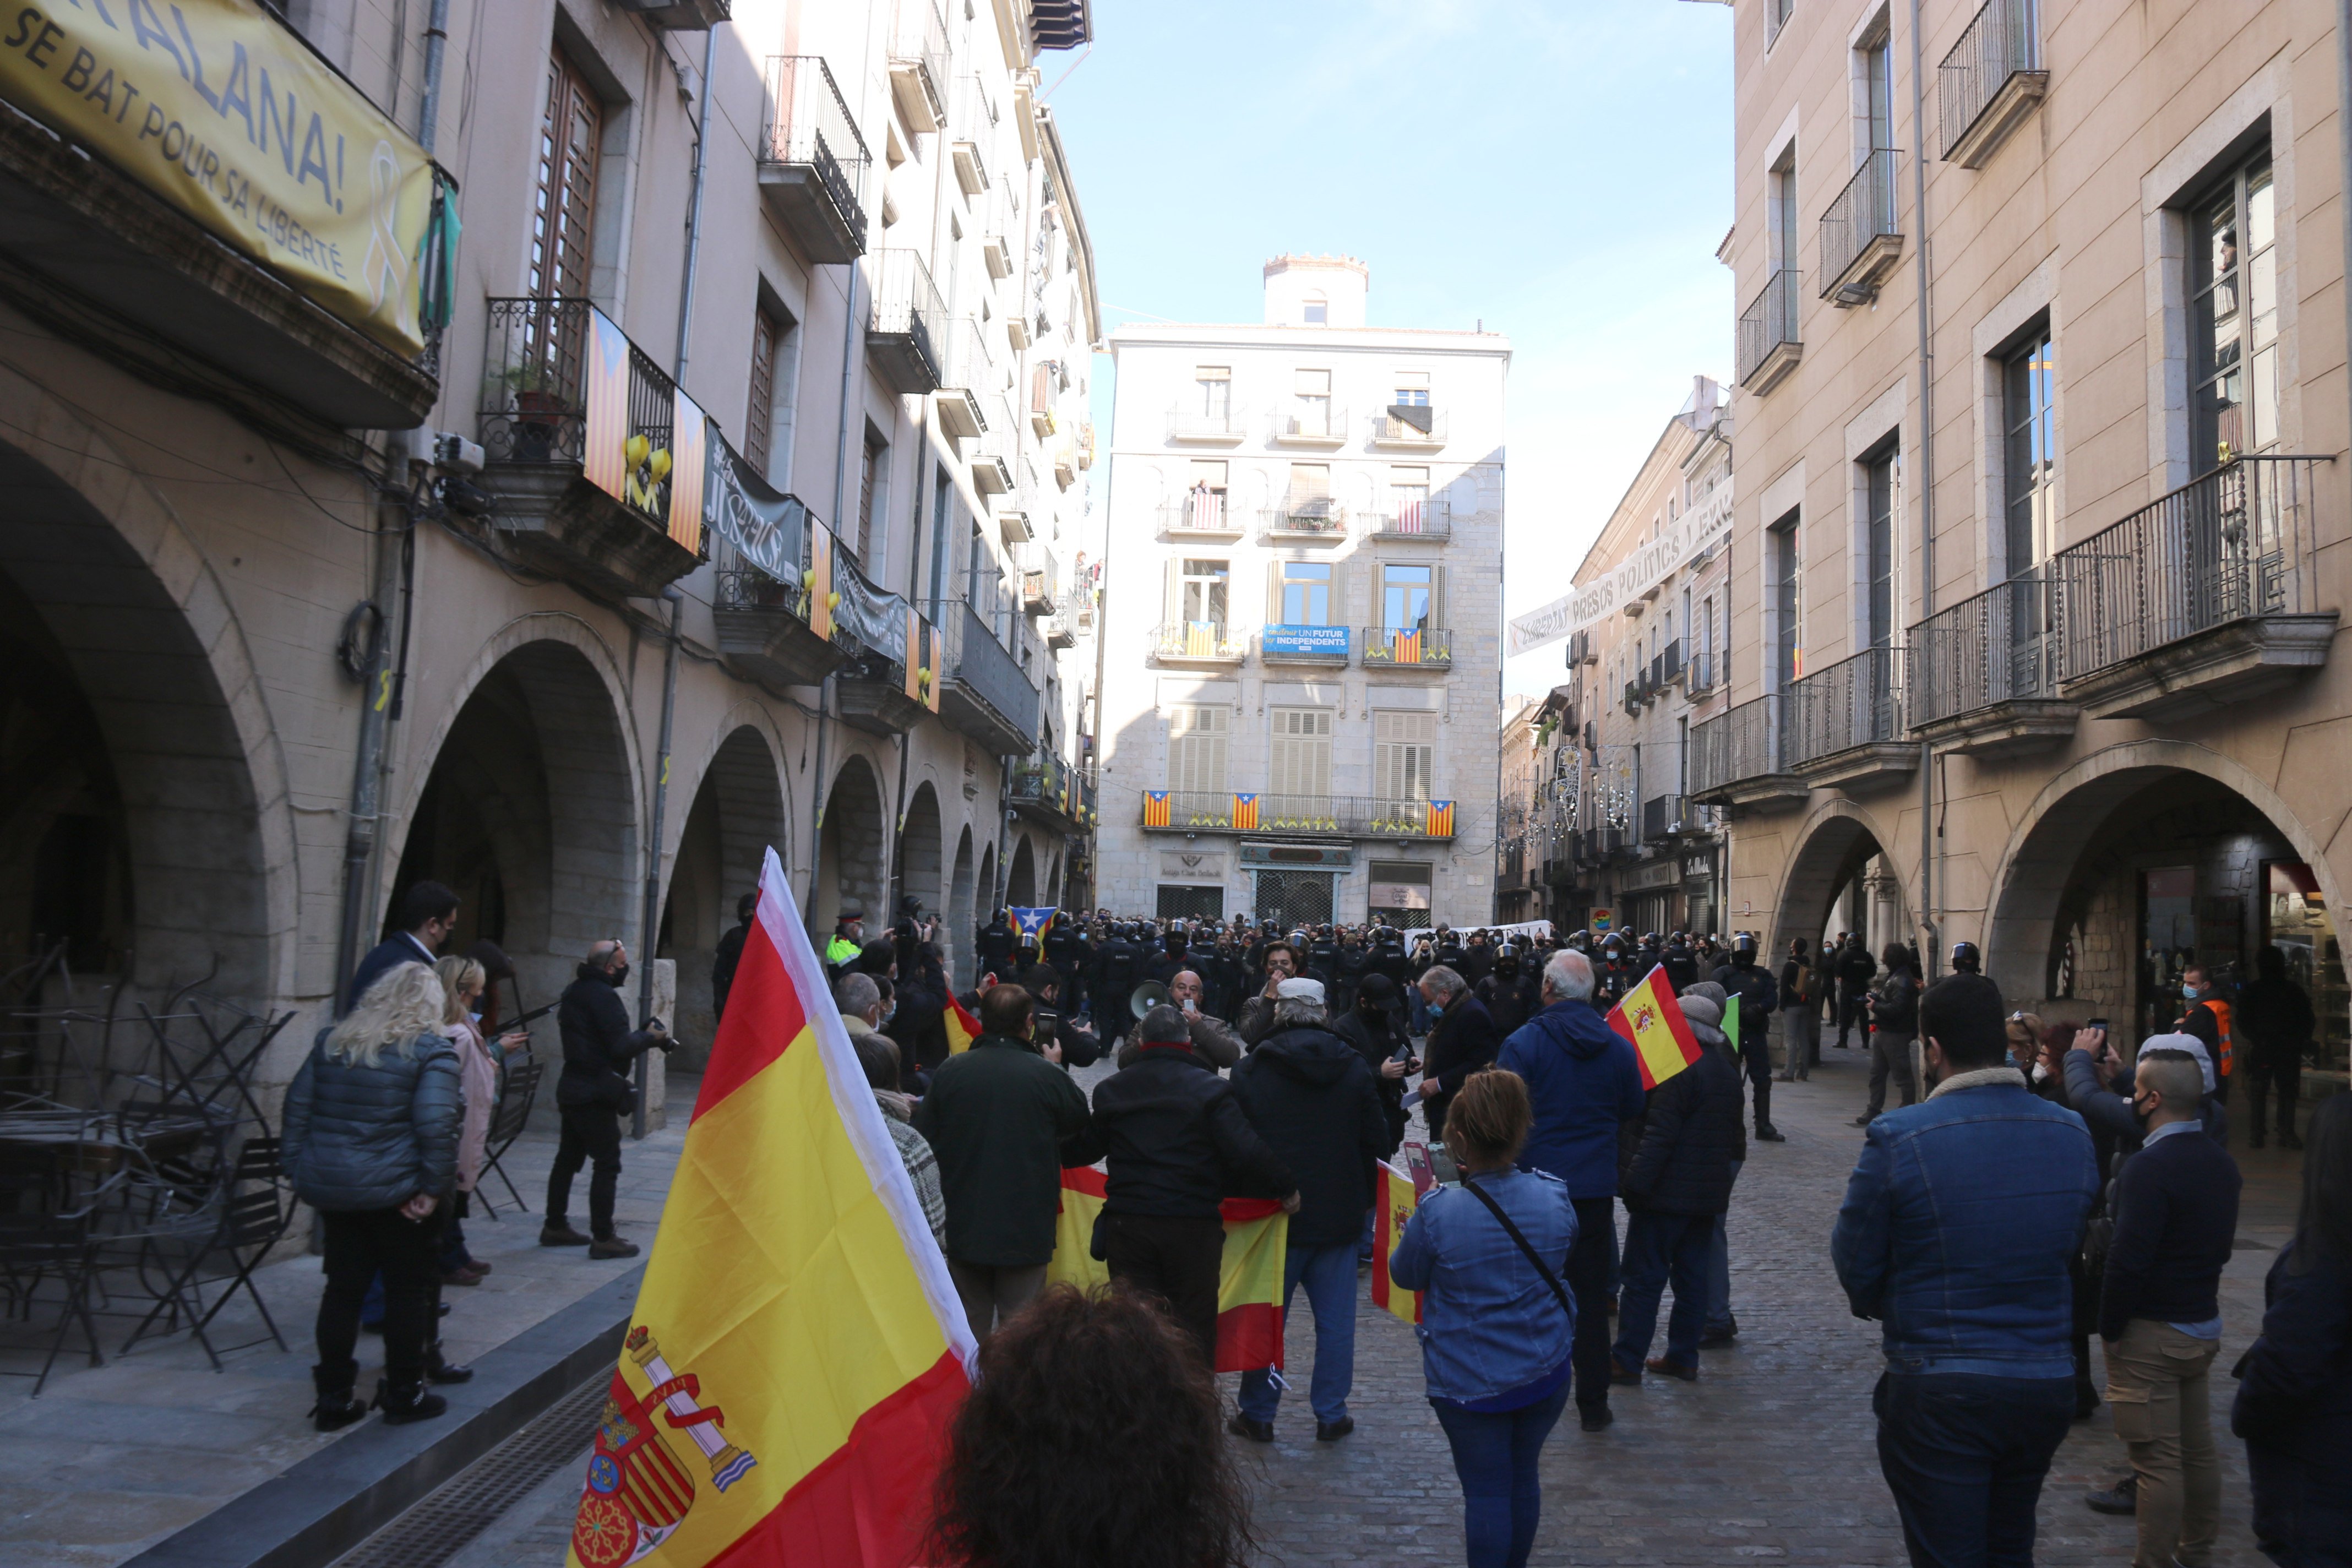 La plaza del Vi de Girona, dividida entre antifascistas y simpatizantes de Vox